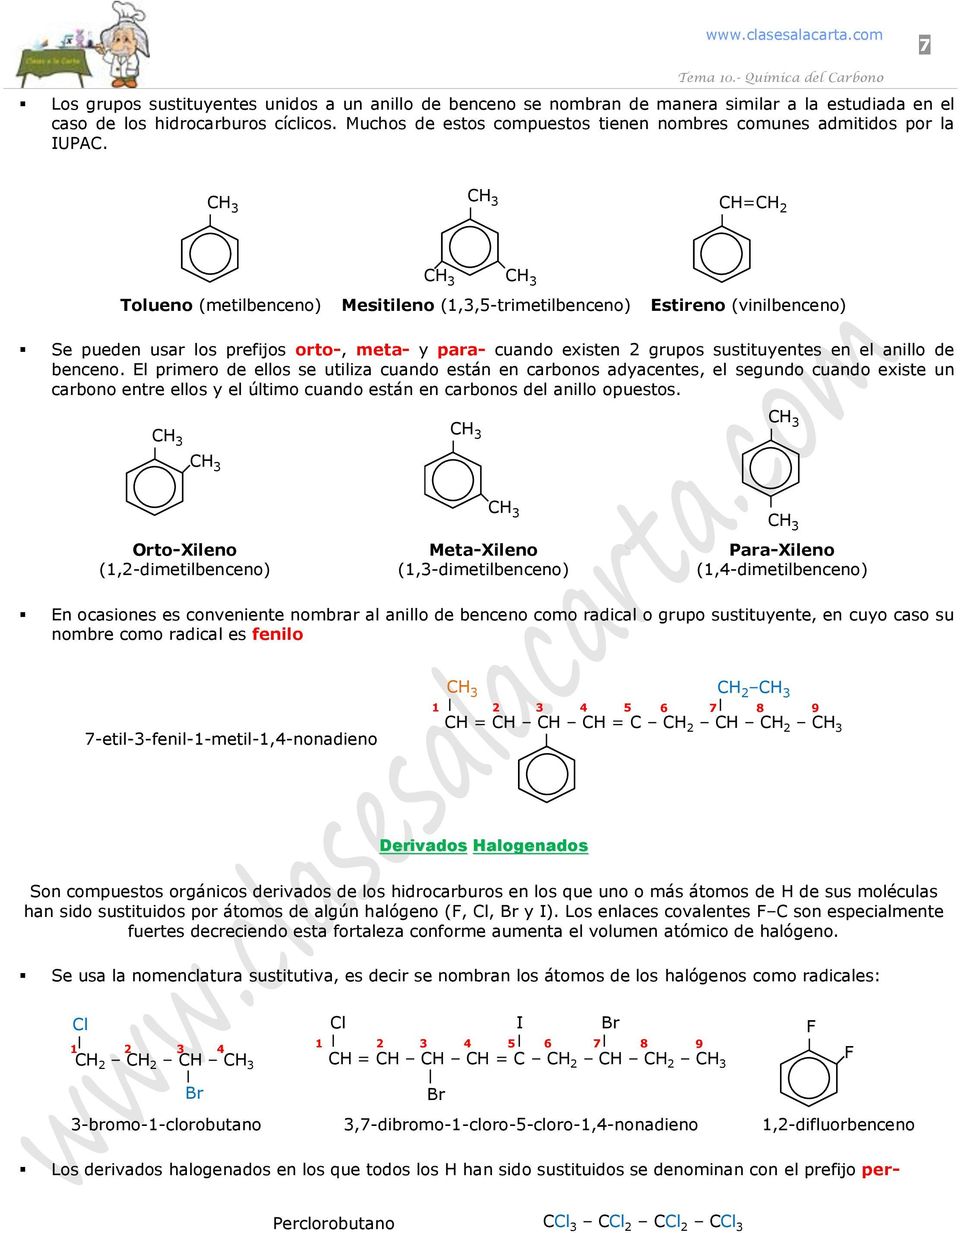 CC Tolueno (metilbenceno) Mesitileno (,,5-trimetilbenceno) Estireno (vinilbenceno) Se pueden usar los prefijos orto-, meta- y para- cuando existen grupos sustituyentes en el anillo de benceno.